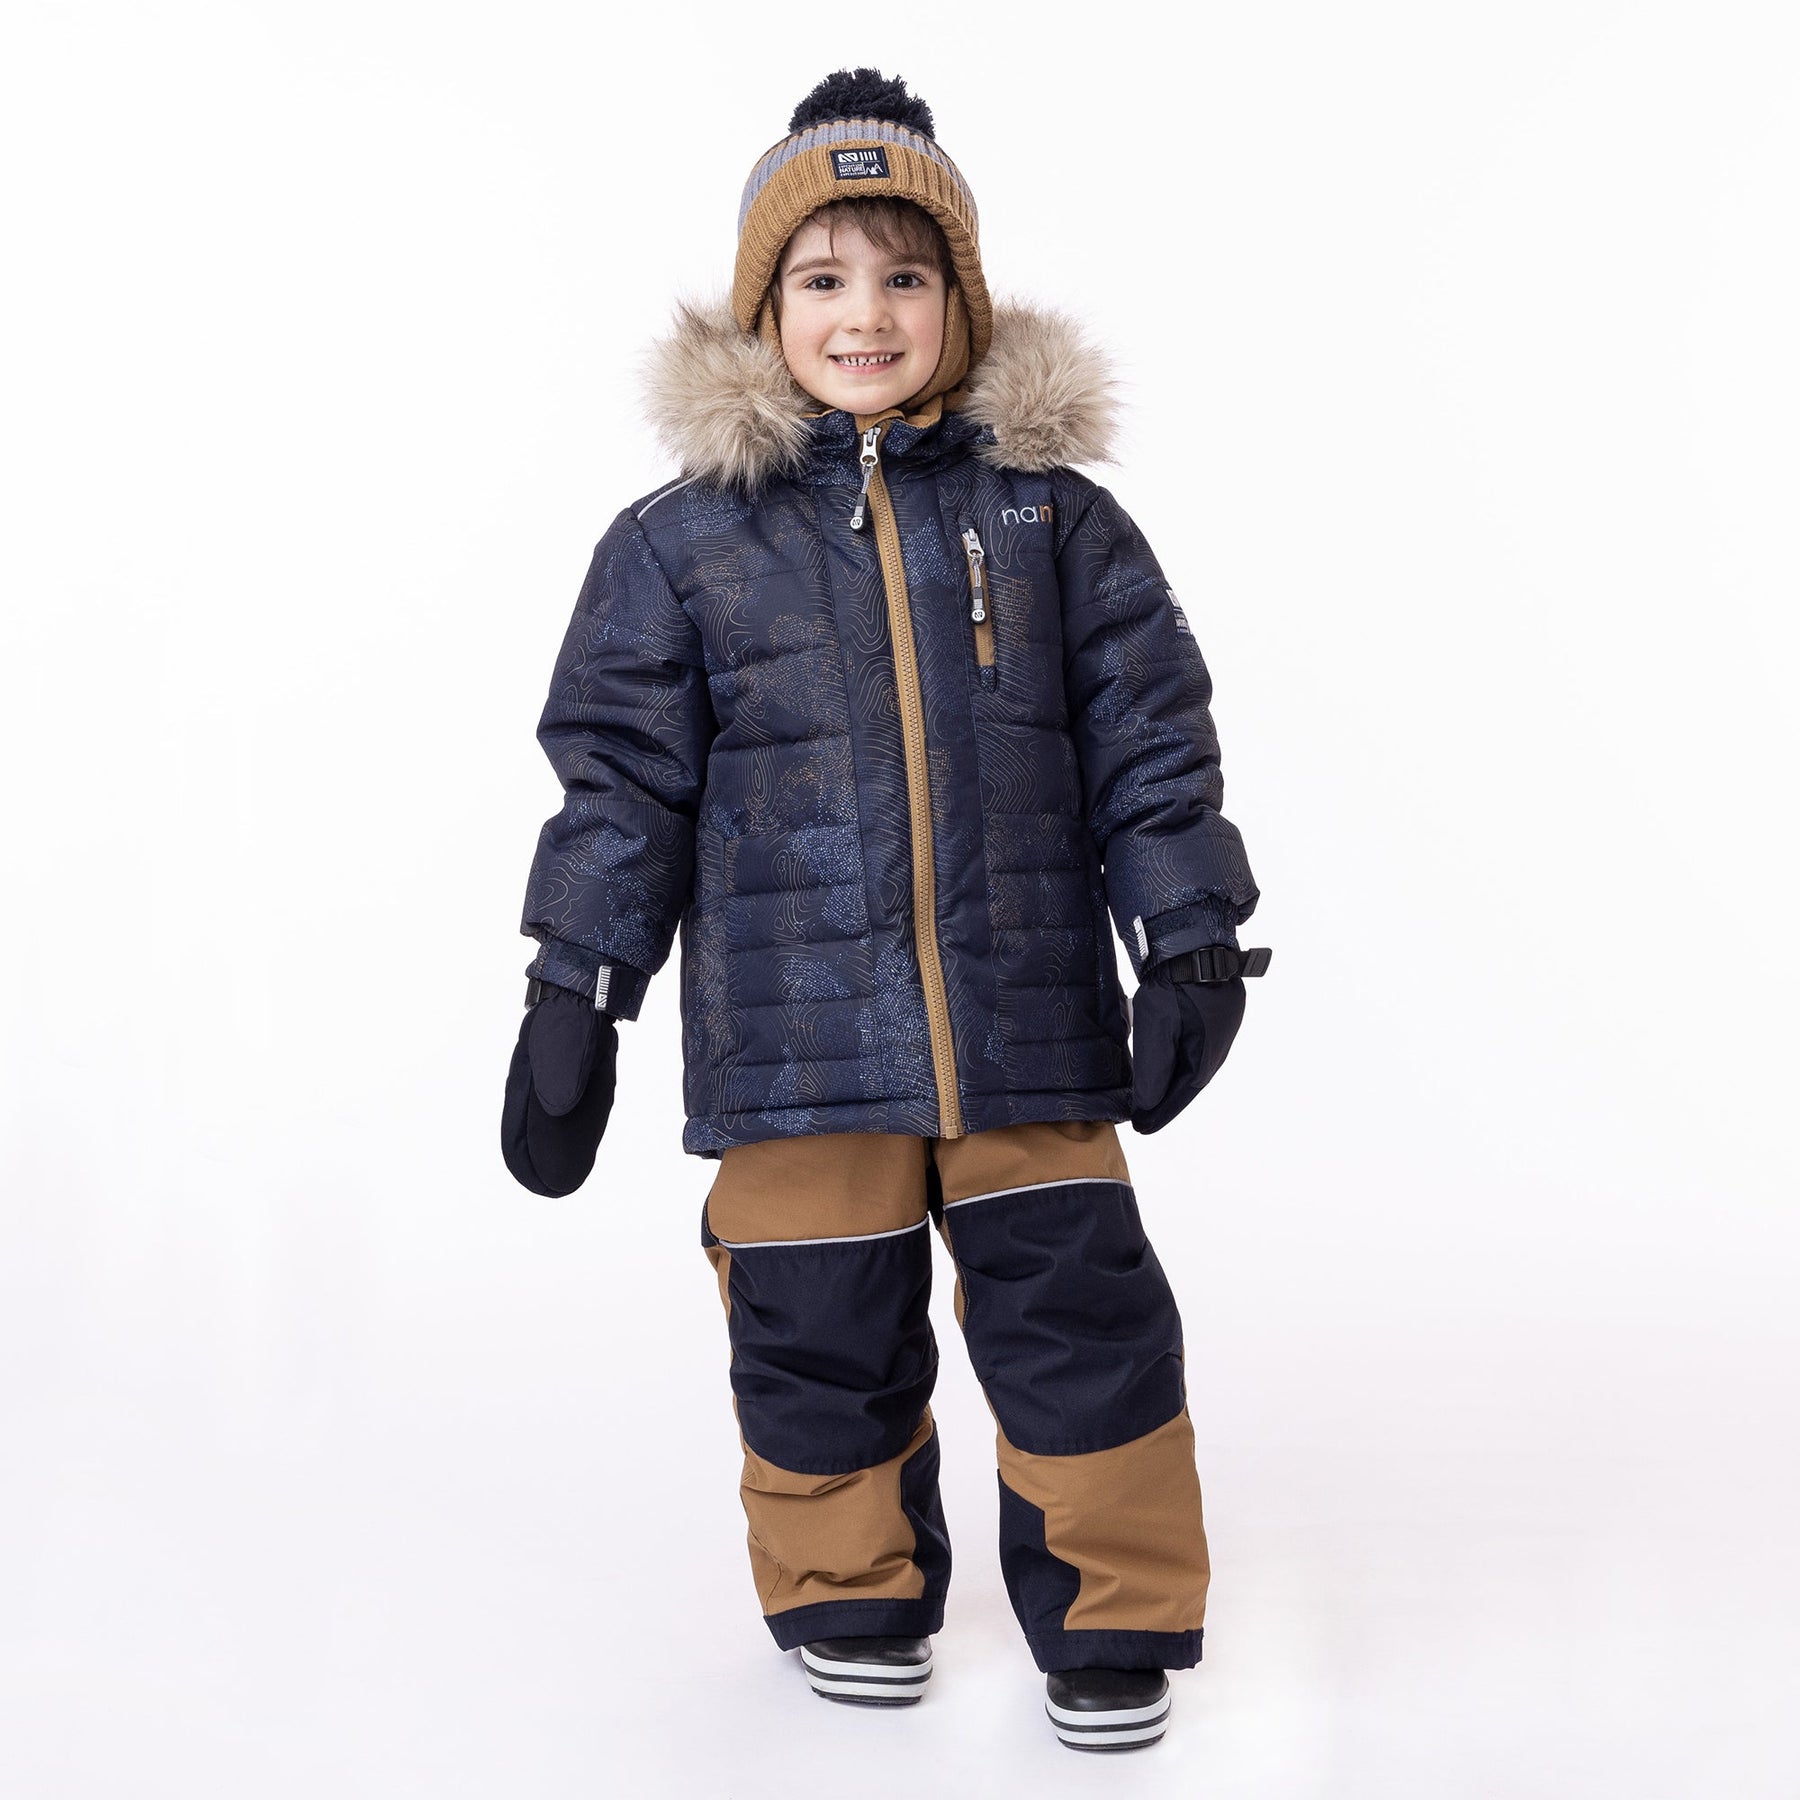 Habit de neige pour enfant garçon par Nanö | Simon/F23M215 Marine | Boutique Flos, vêtements mode pour bébés et enfants